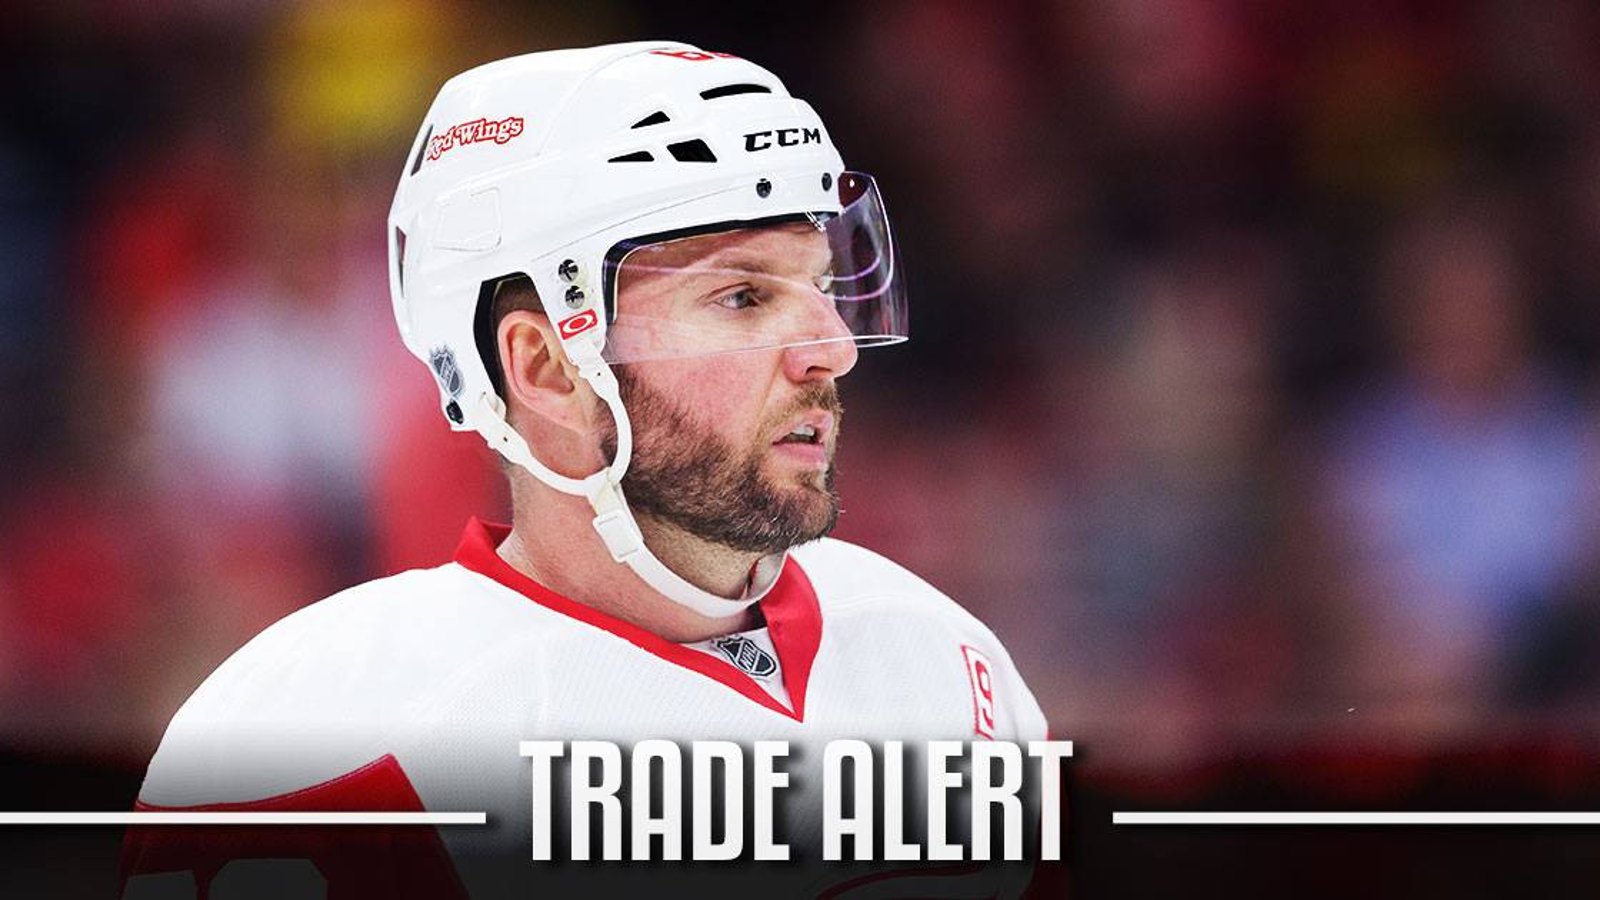 Trade Alert: Vanek has been Traded.